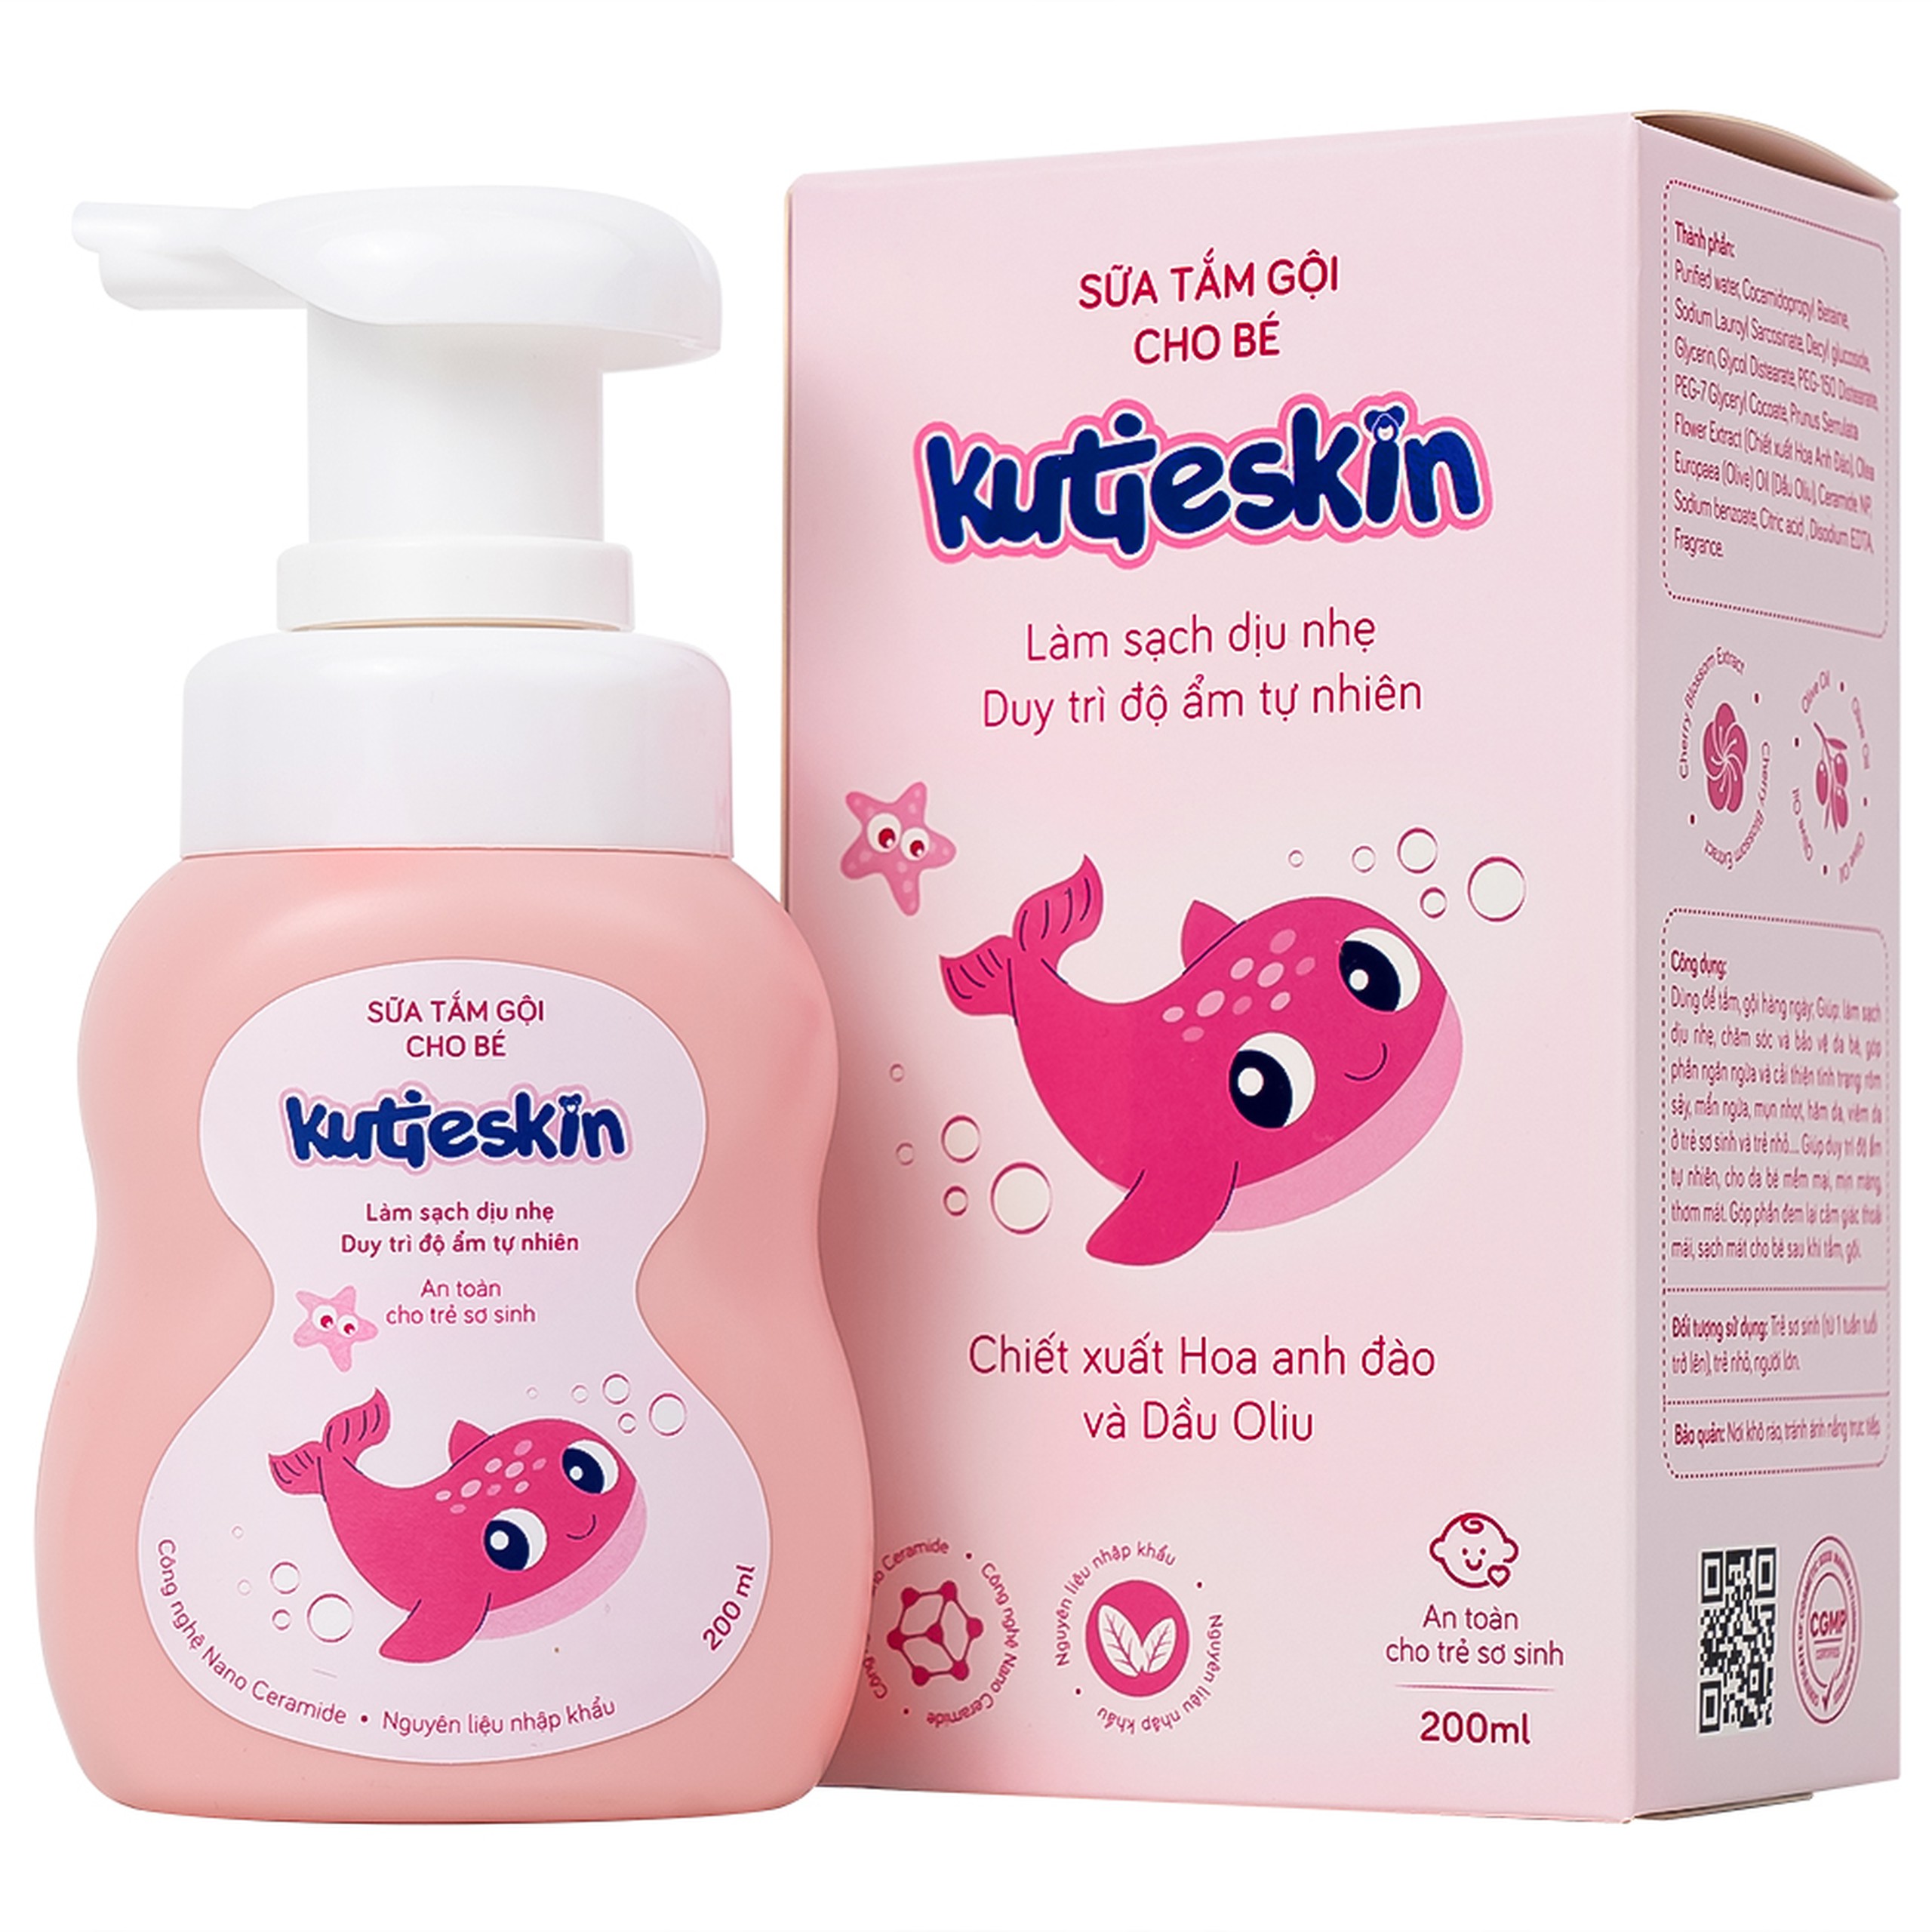 Sữa tắm gội cho bé Kutieskin giúp làm sạch dịu nhẹ, chăm sóc và bảo vệ da bé (200ml)